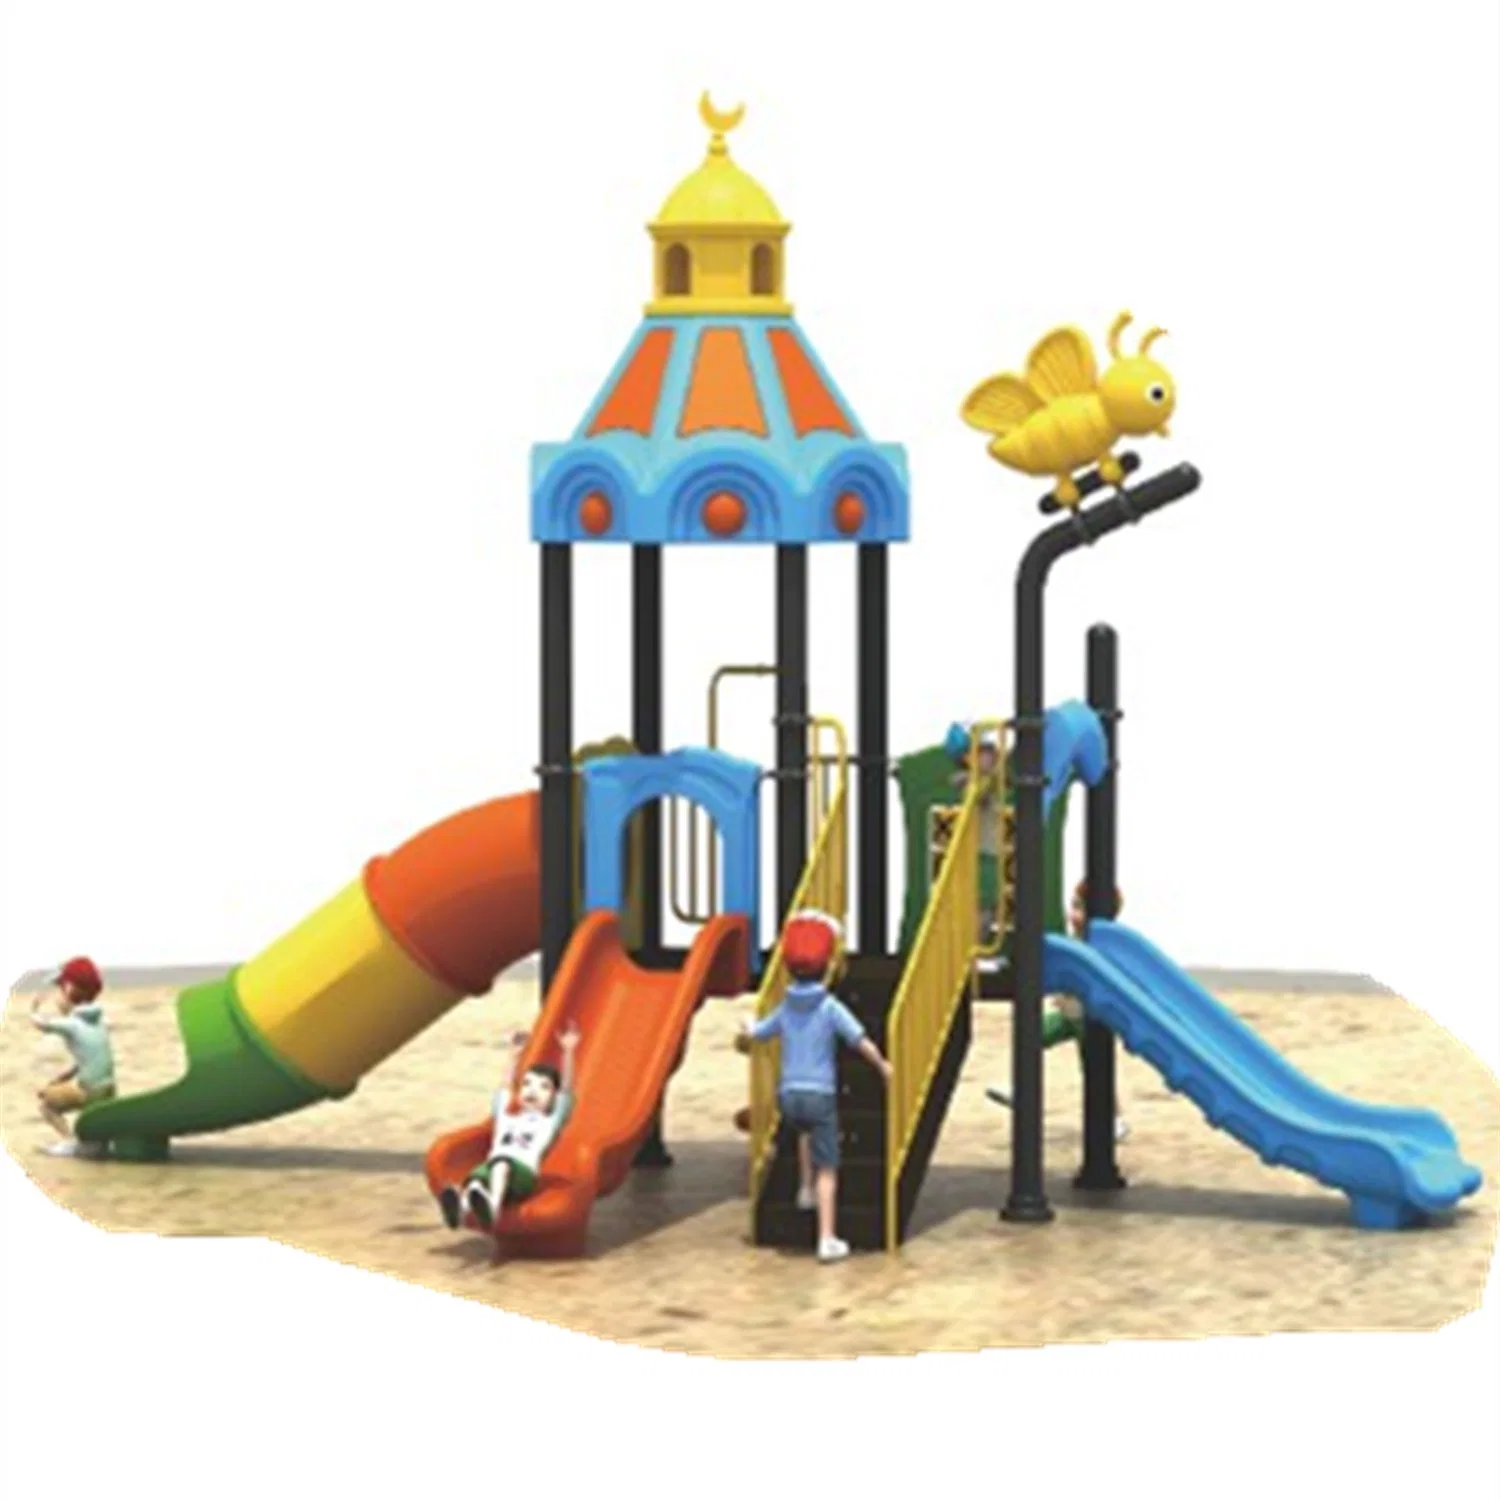 Outdoor Playground Slides Children's Amusement Park Equipment Combination 279b